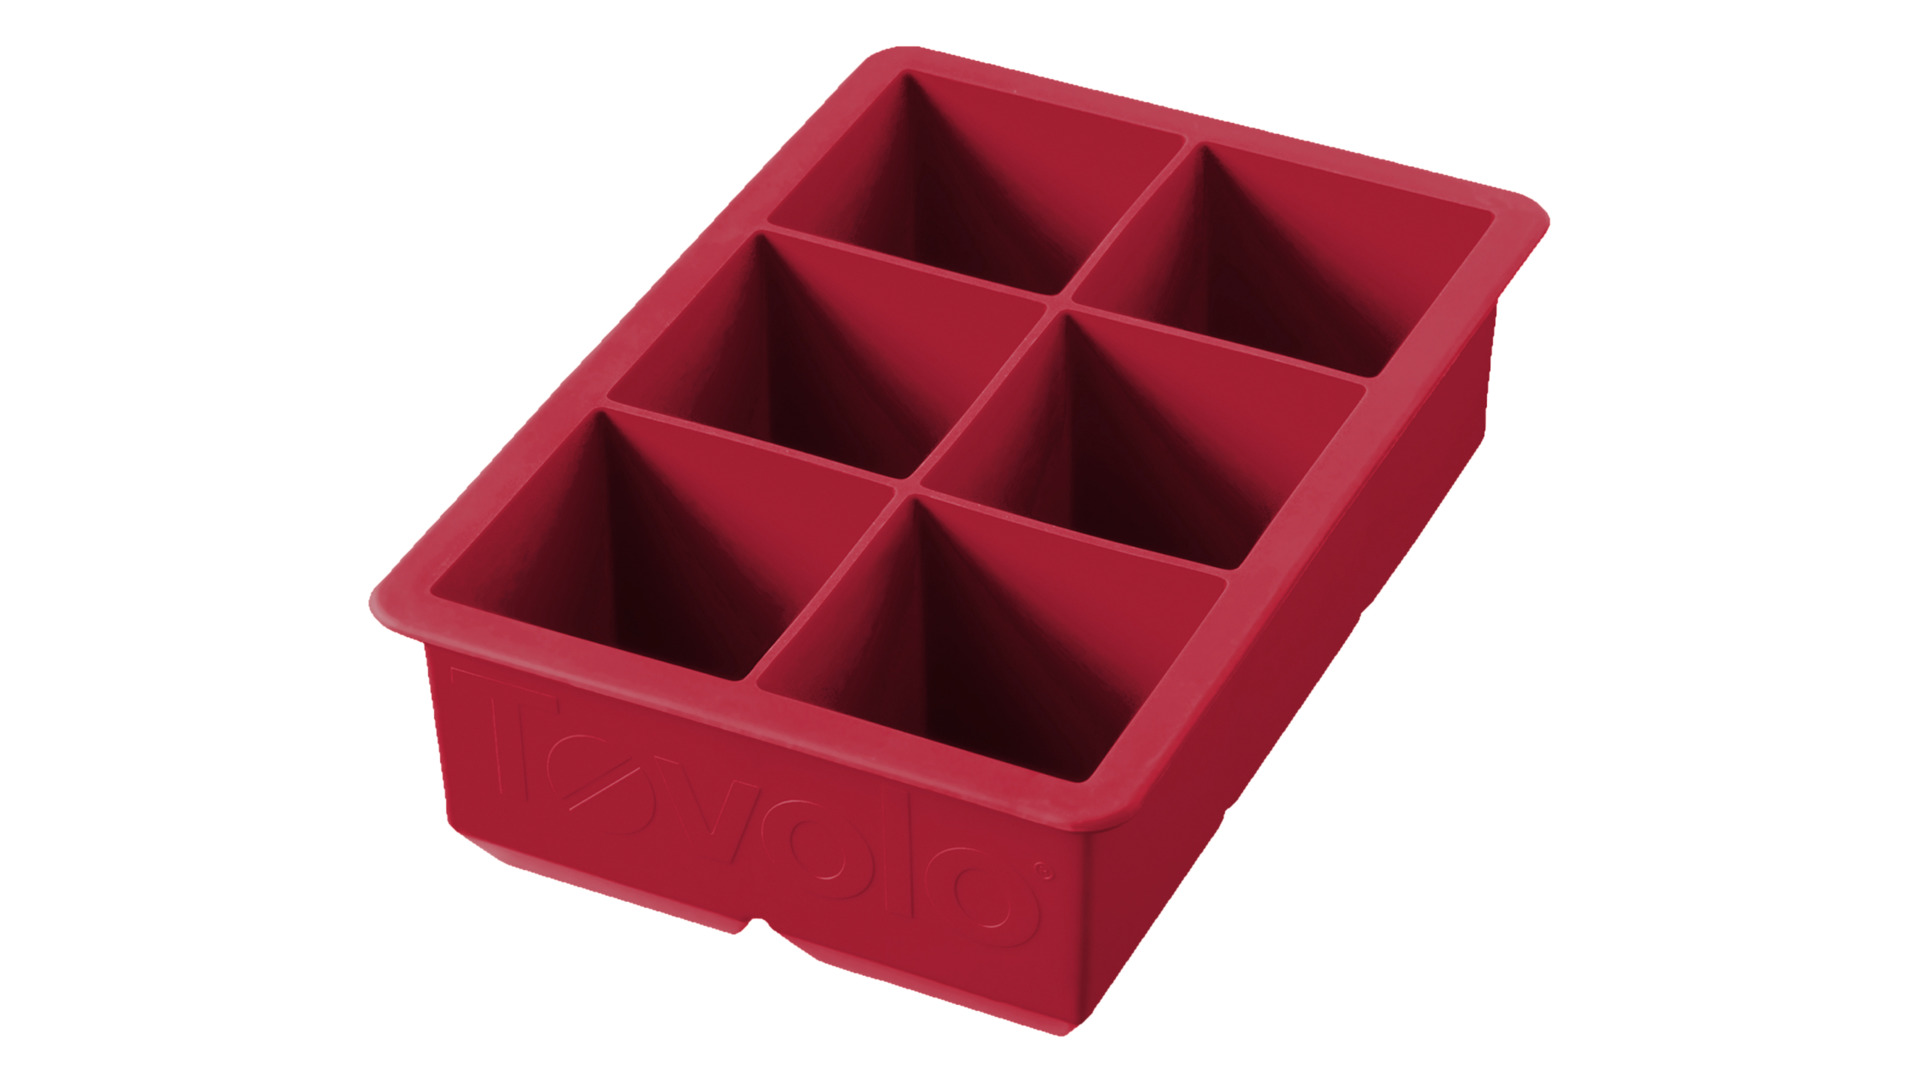 Форма силиконовая для льда Tovolo Королевский куб 5х11х19,5 см, темно-красная